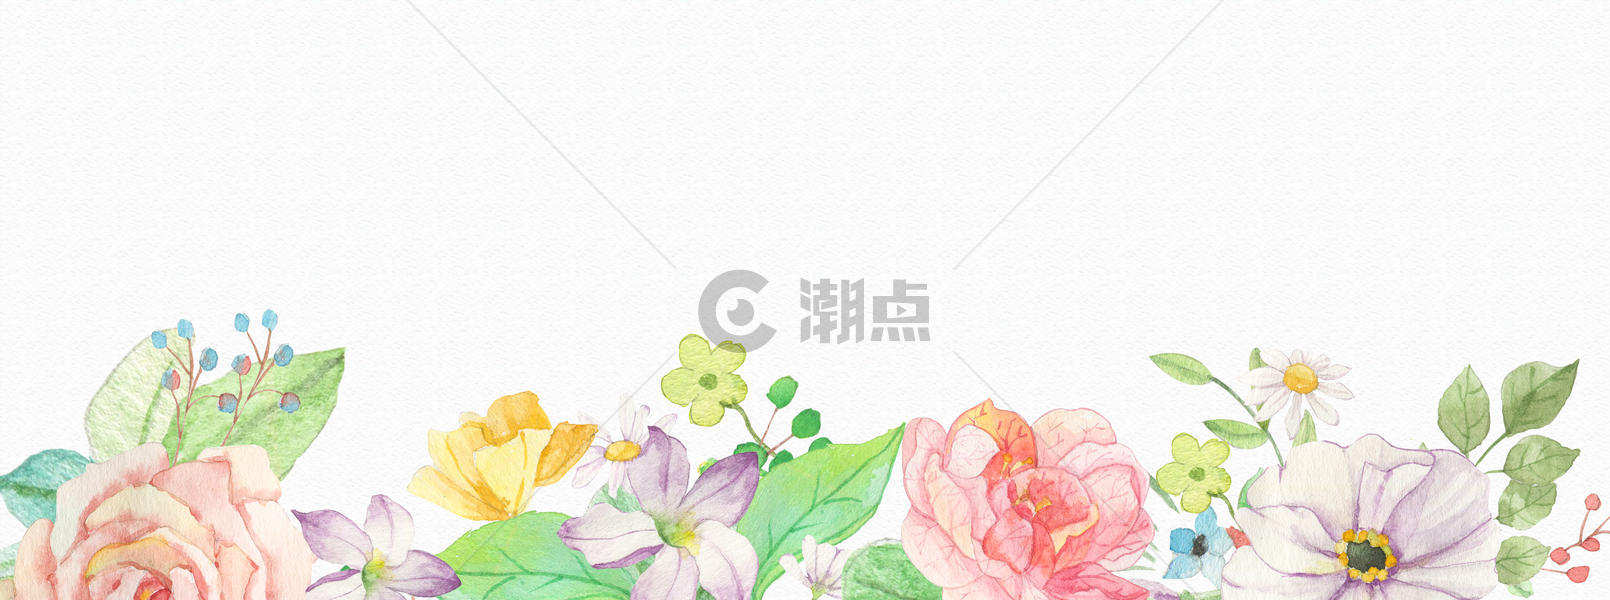 花卉水彩背景素材图片素材免费下载